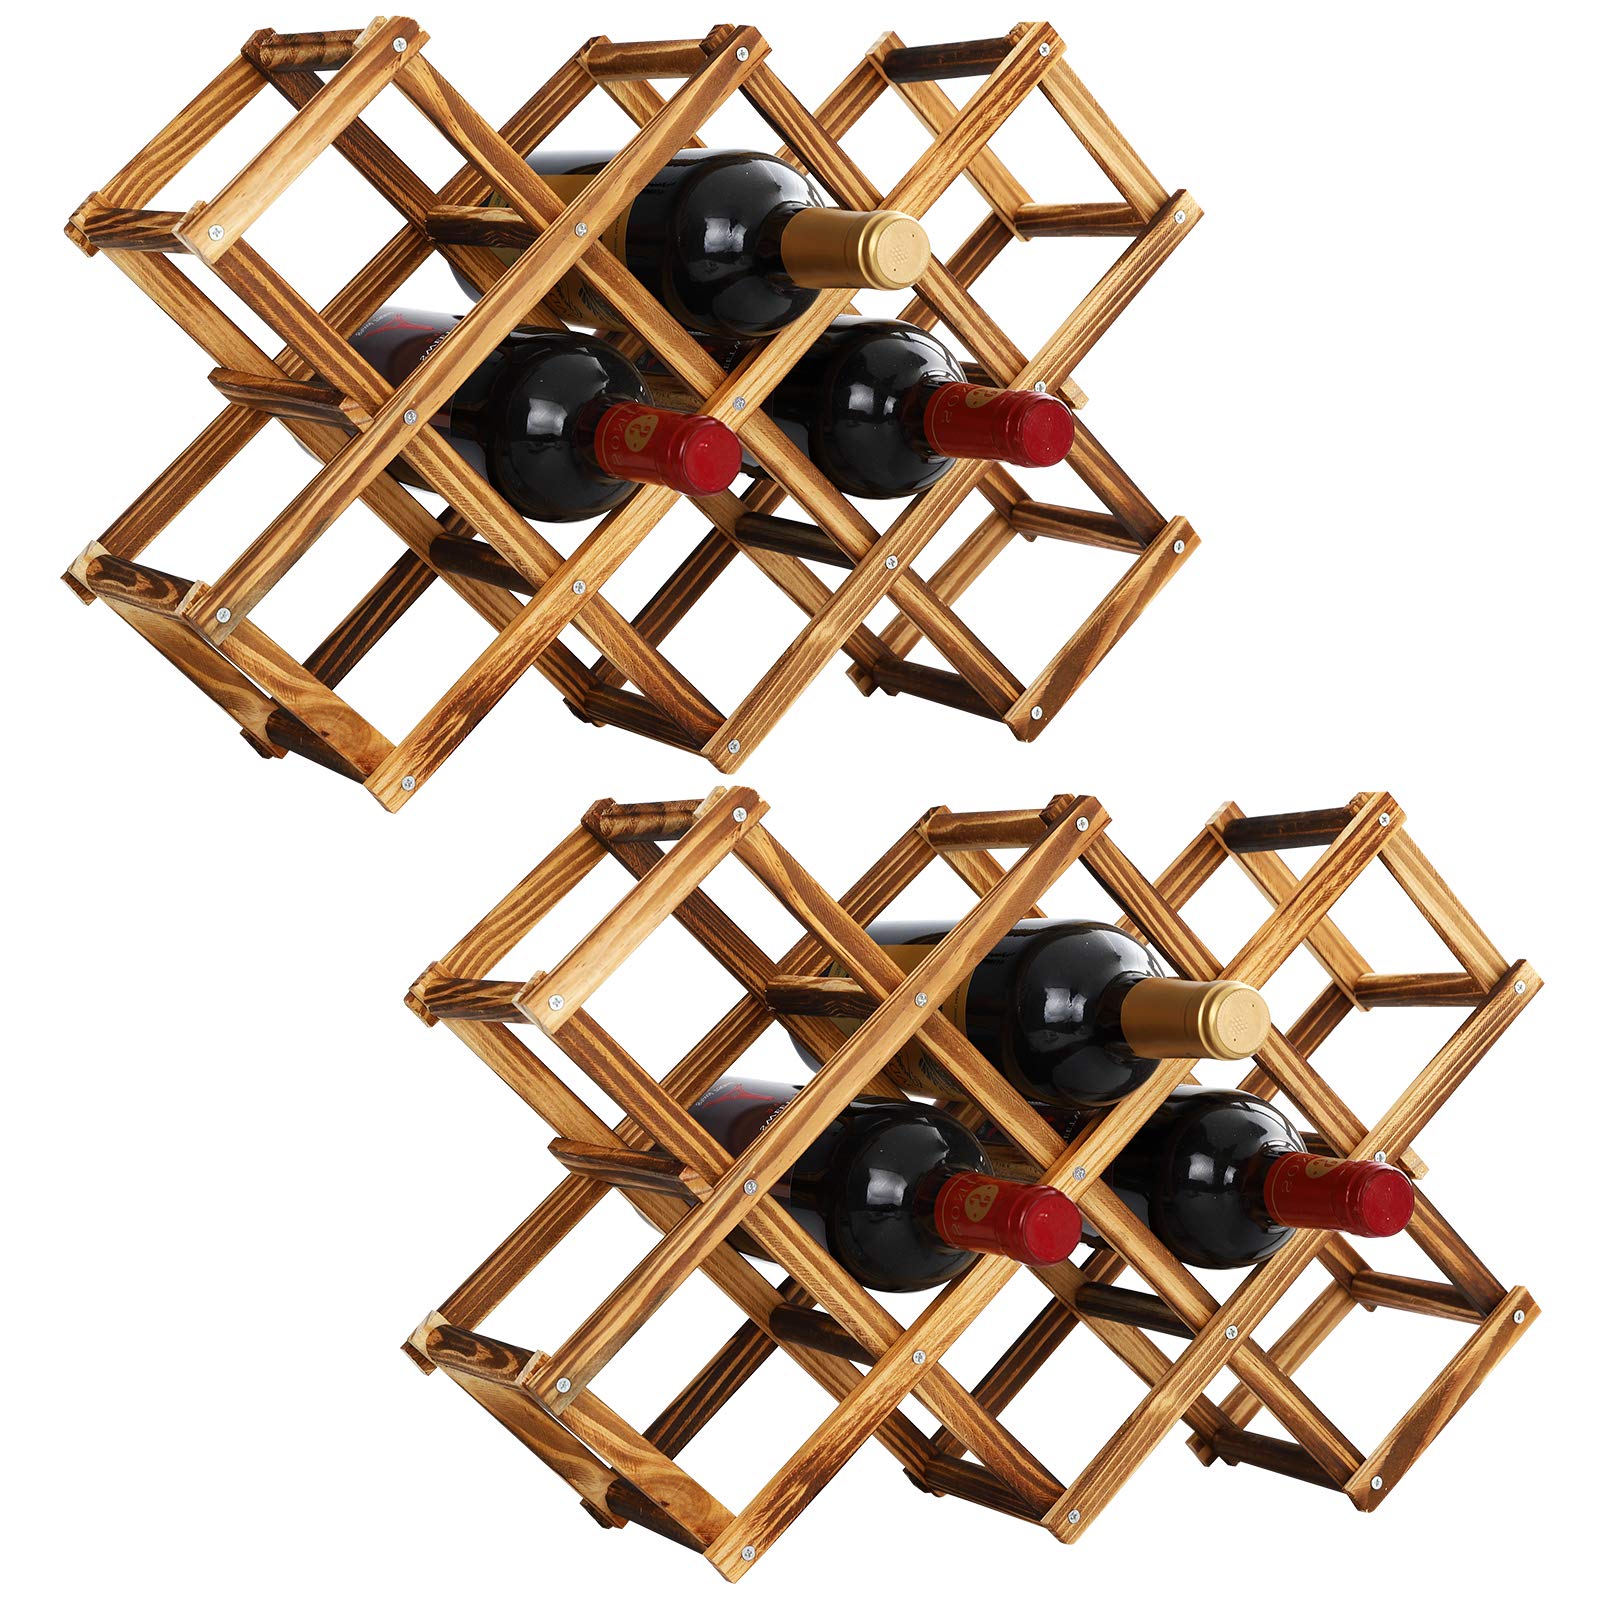 Shangrun 10 Bottles Capacity Foldable Free Standing Wooden Wine Rack